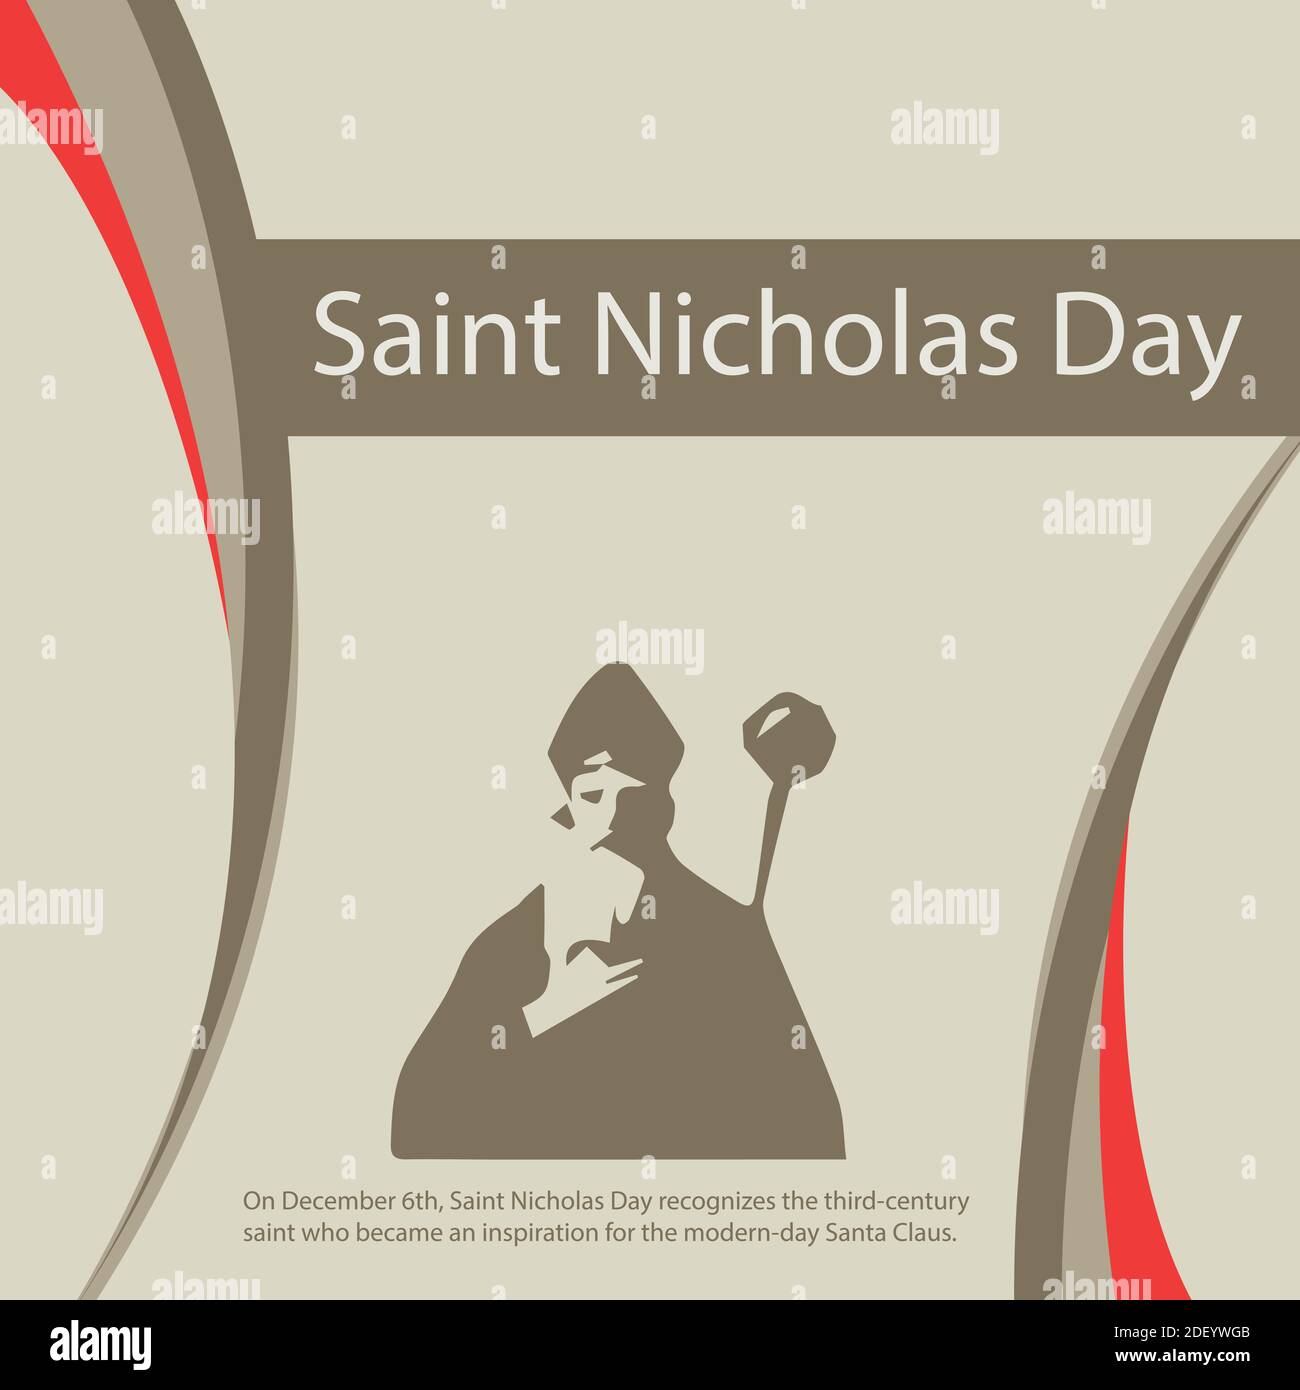 Le 6 décembre, Saint Nicolas Day reconnaît le saint du troisième siècle qui est devenu une inspiration pour le Père Noël moderne. Illustration de Vecteur